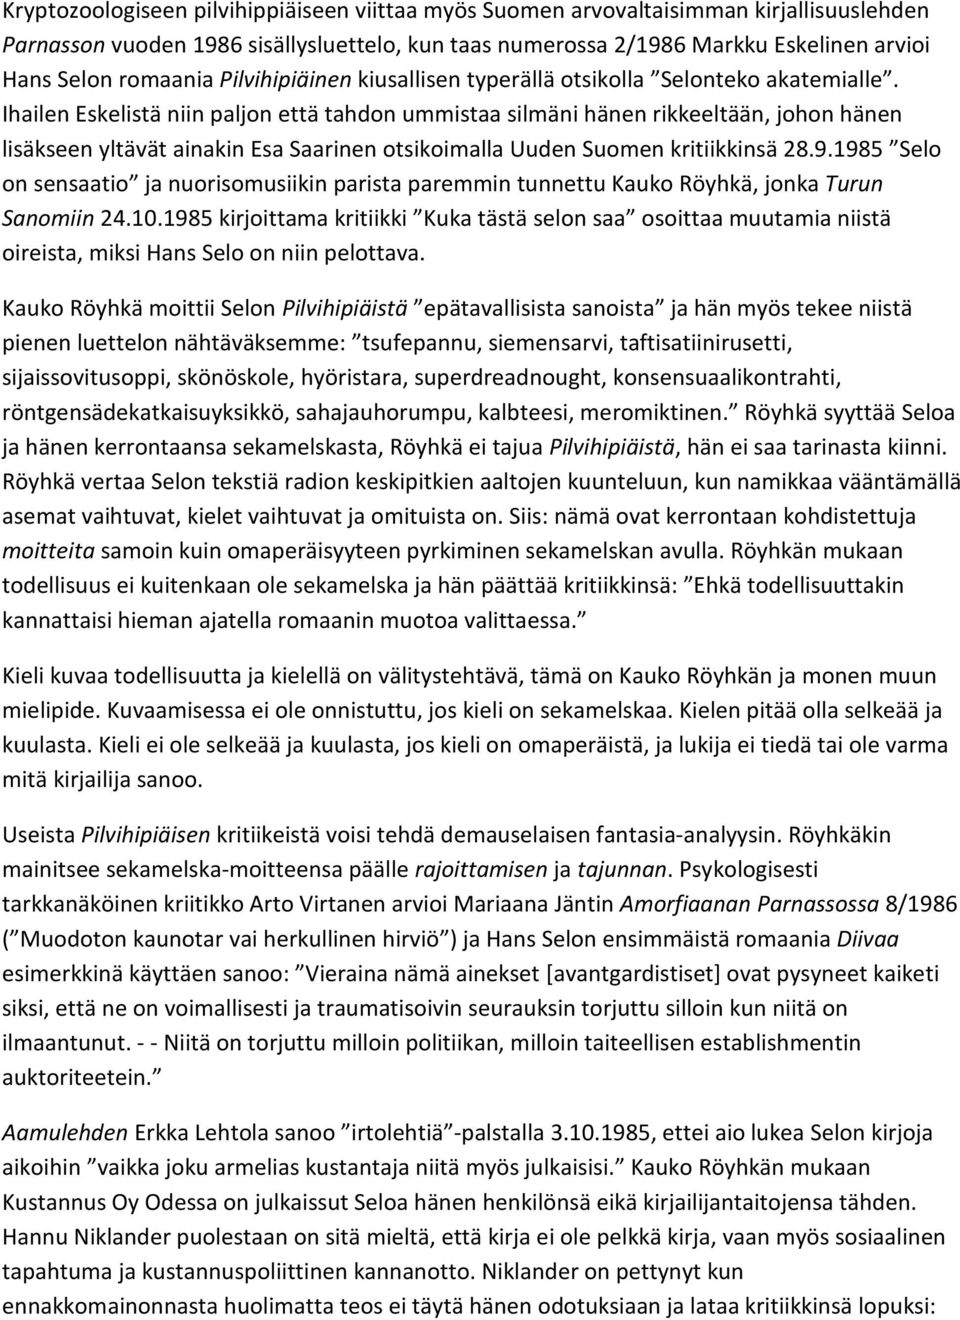 Ihailen Eskelistä niin paljon että tahdon ummistaa silmäni hänen rikkeeltään, johon hänen lisäkseen yltävät ainakin Esa Saarinen otsikoimalla Uuden Suomen kritiikkinsä 28.9.